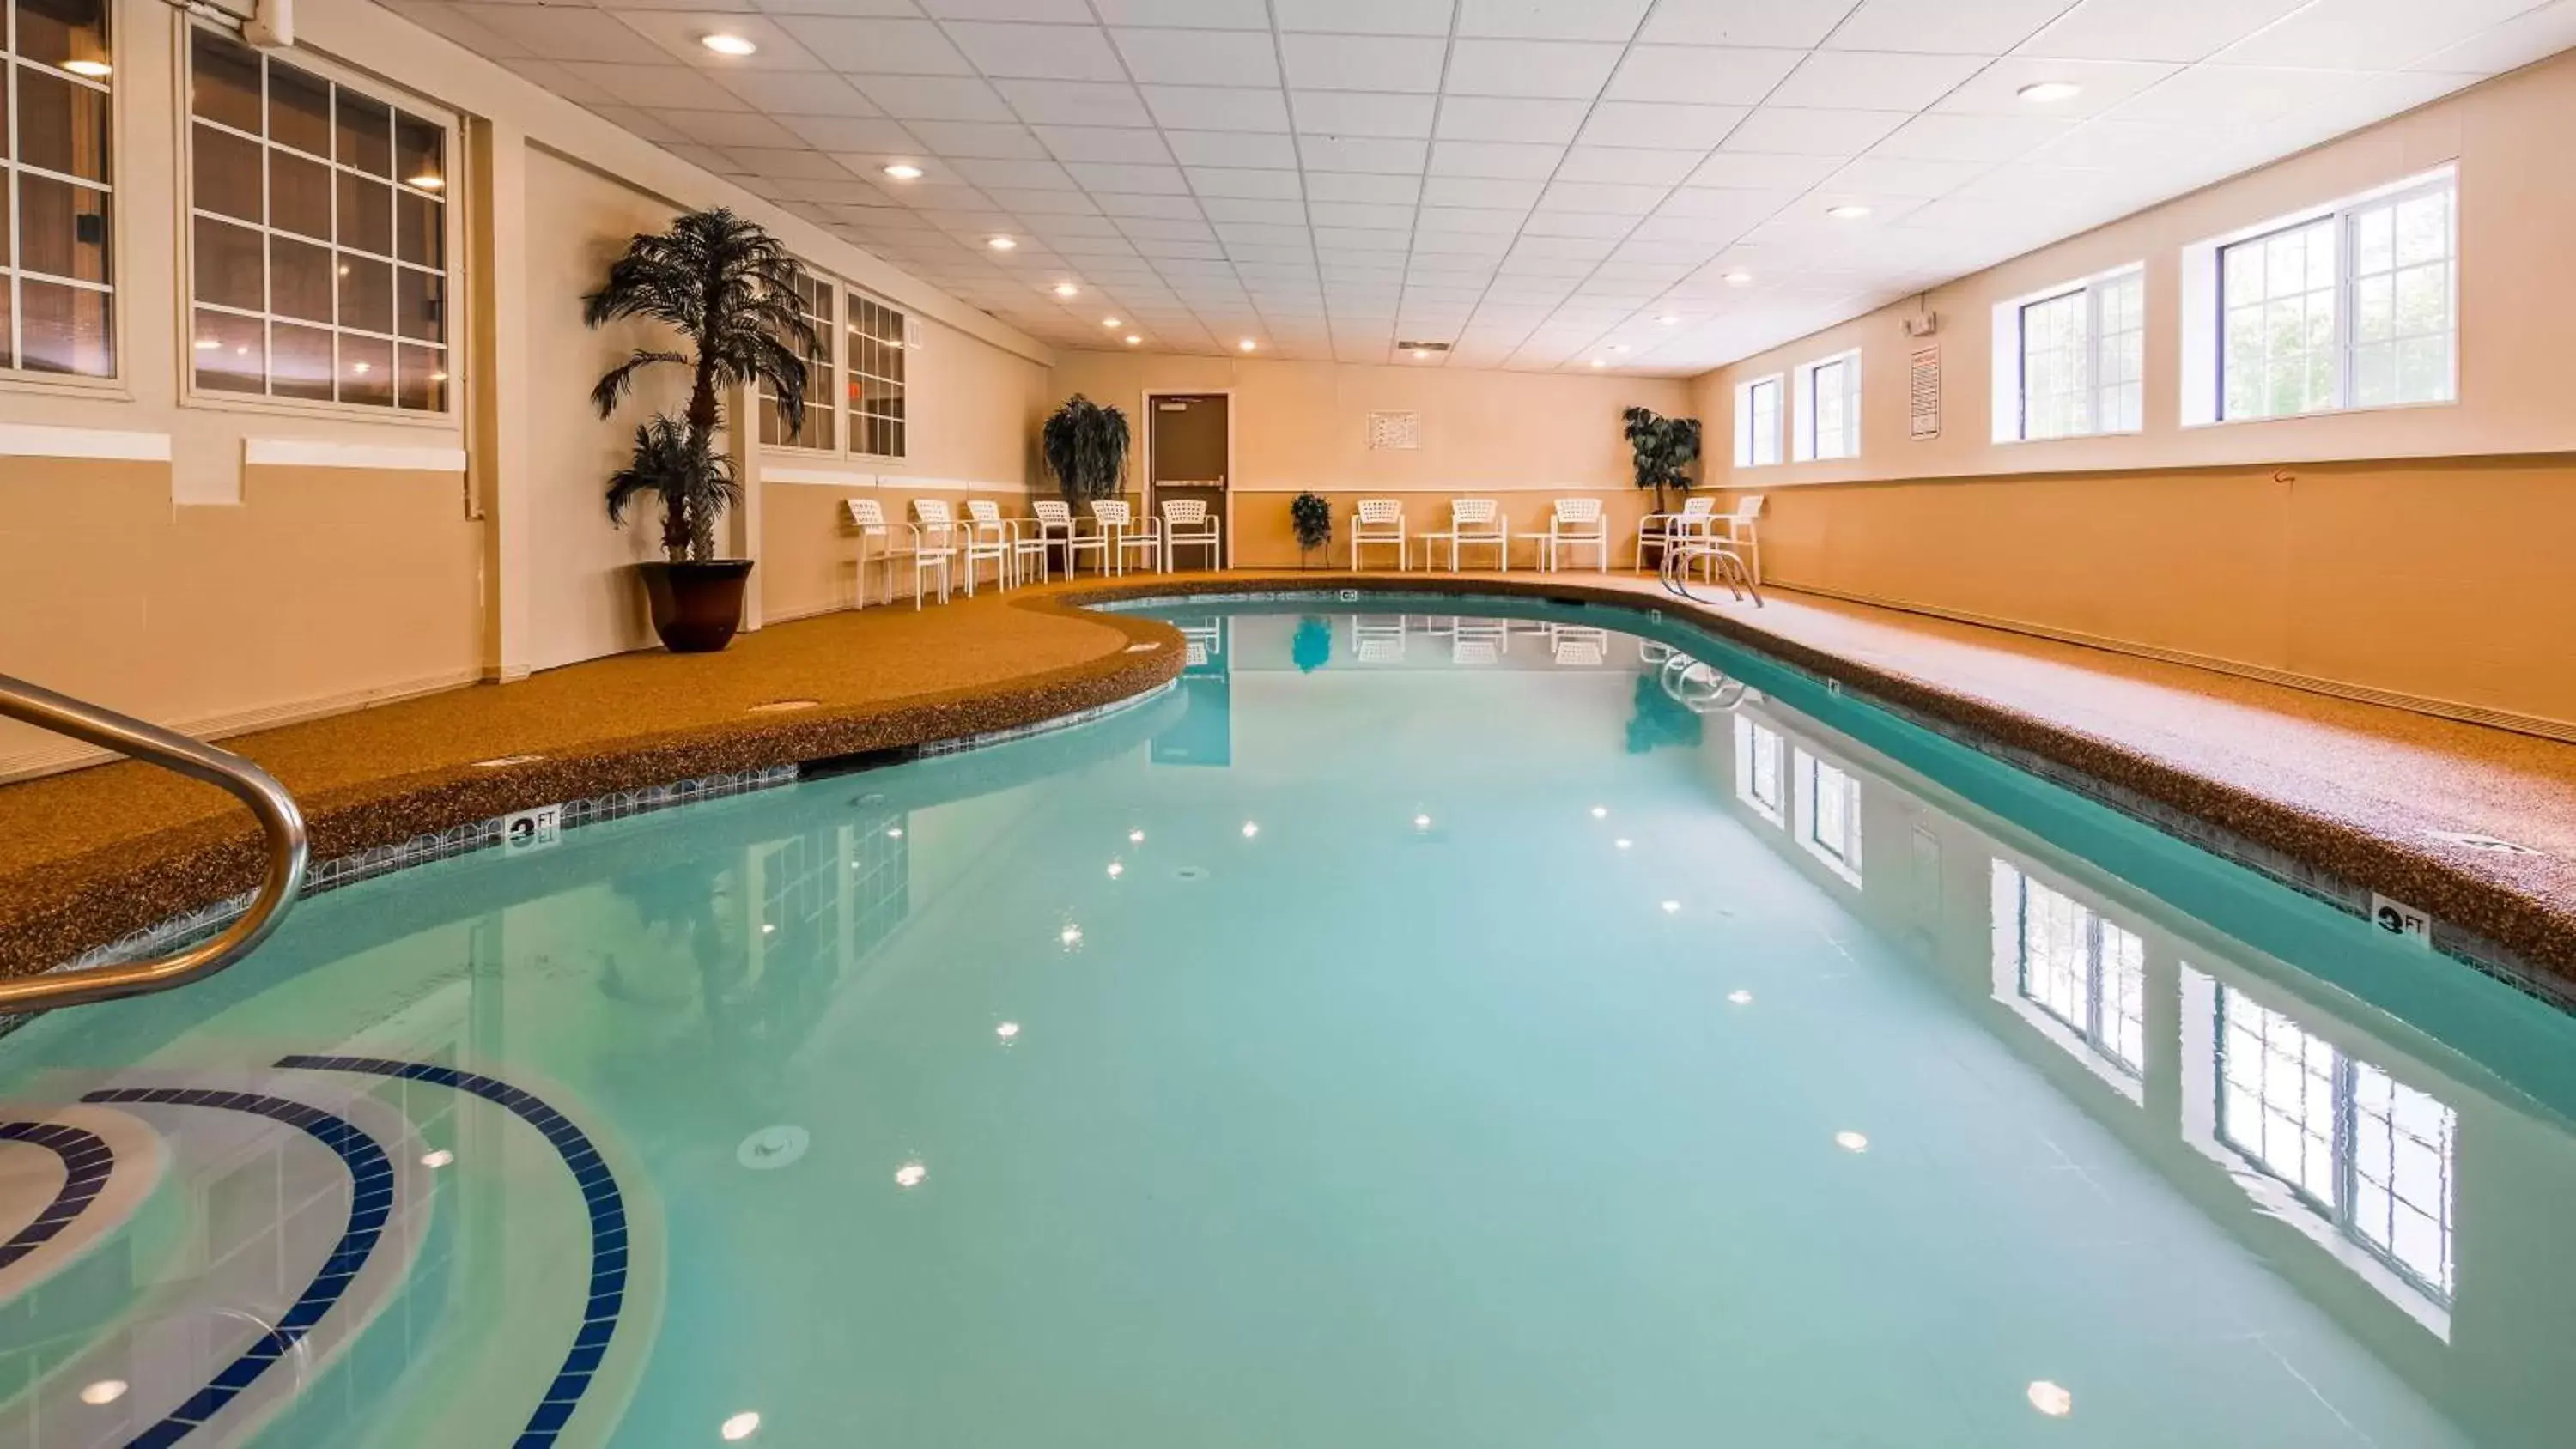 On site, Swimming Pool in Best Western York Inn